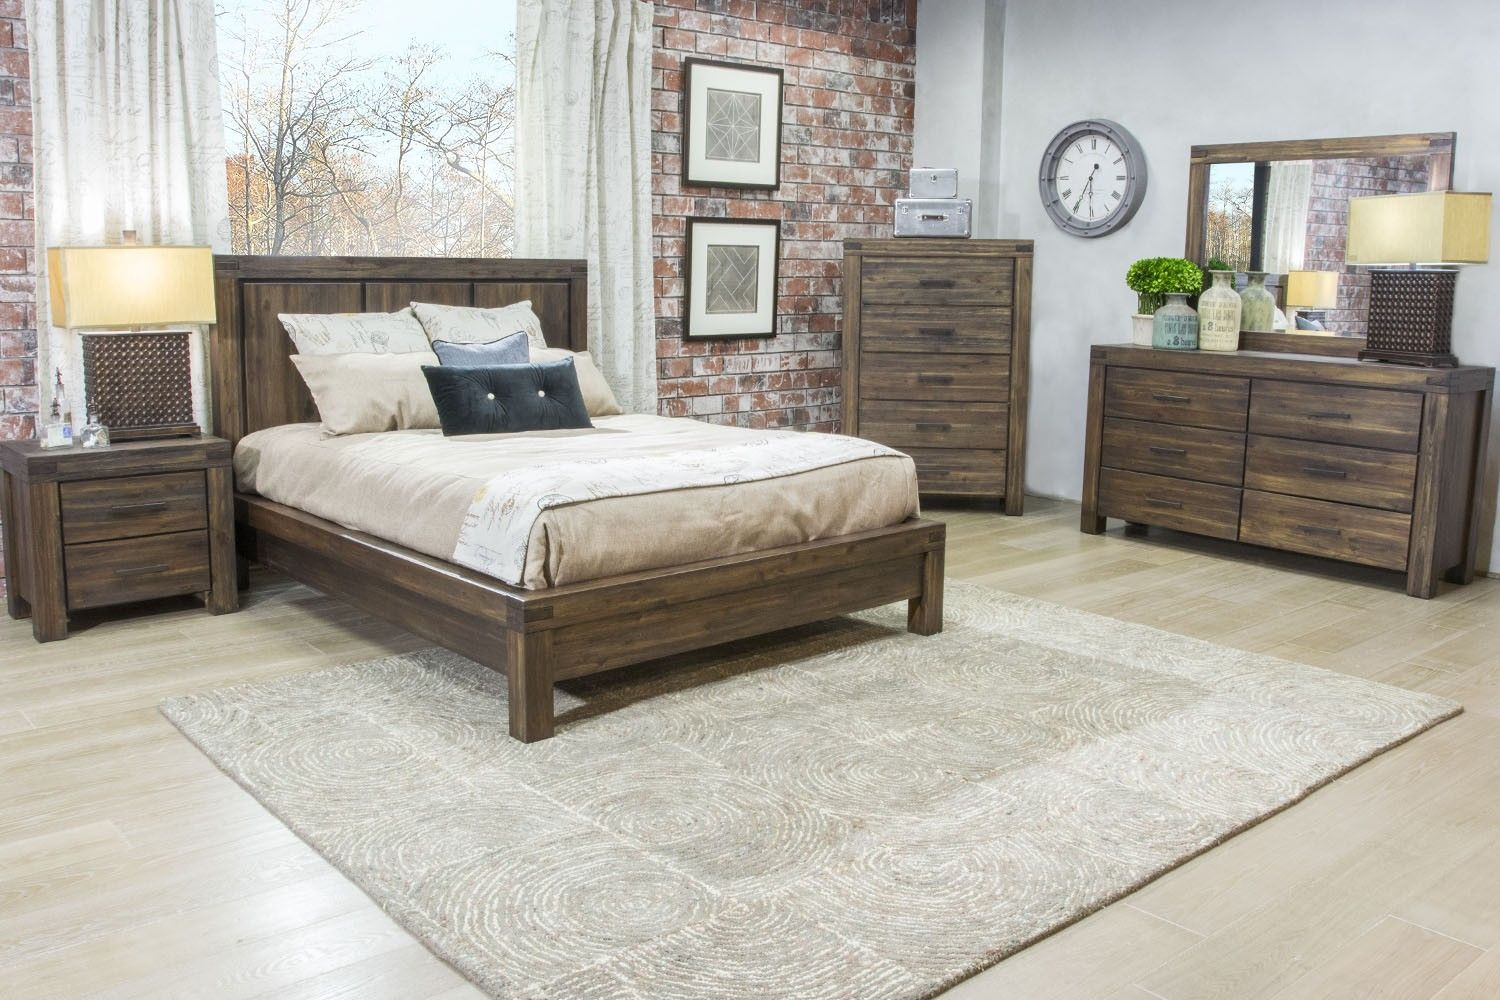 mor furniture less bedroom set